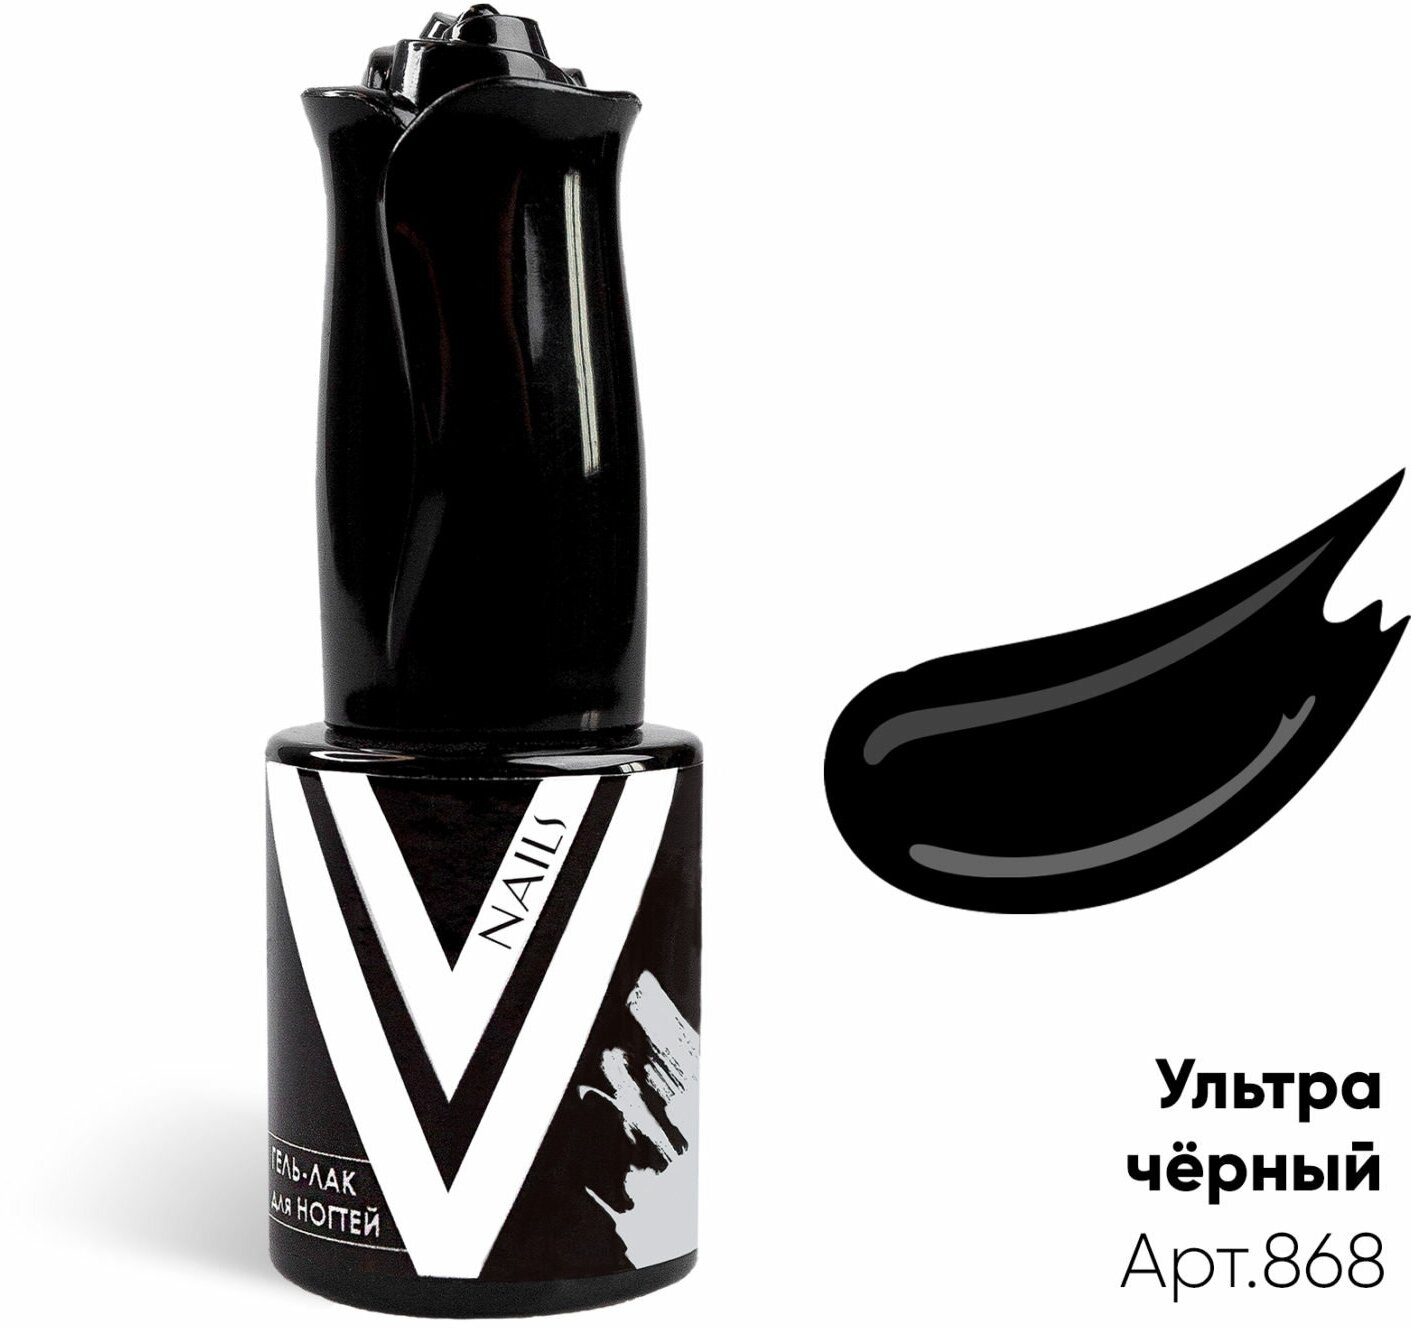 Гель лак Vogue nails Ультра-чёрный, 10ml